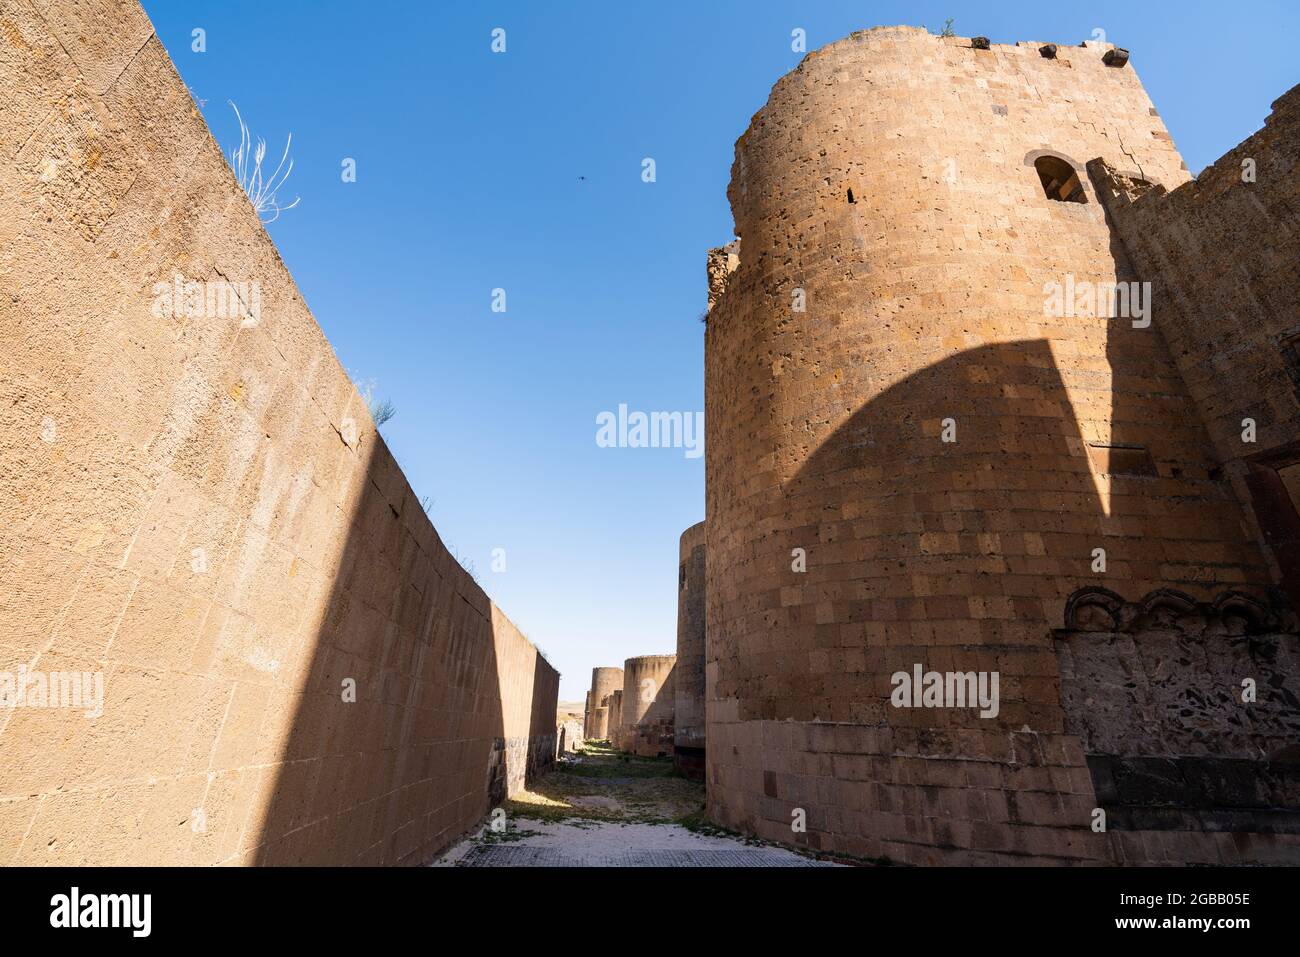 Ani Stadt und Festung und Turm Ruinen historischen antiken Ruinen einer antiken Stadt in Kars, Türkei. Hochwertige Fotos Stockfoto